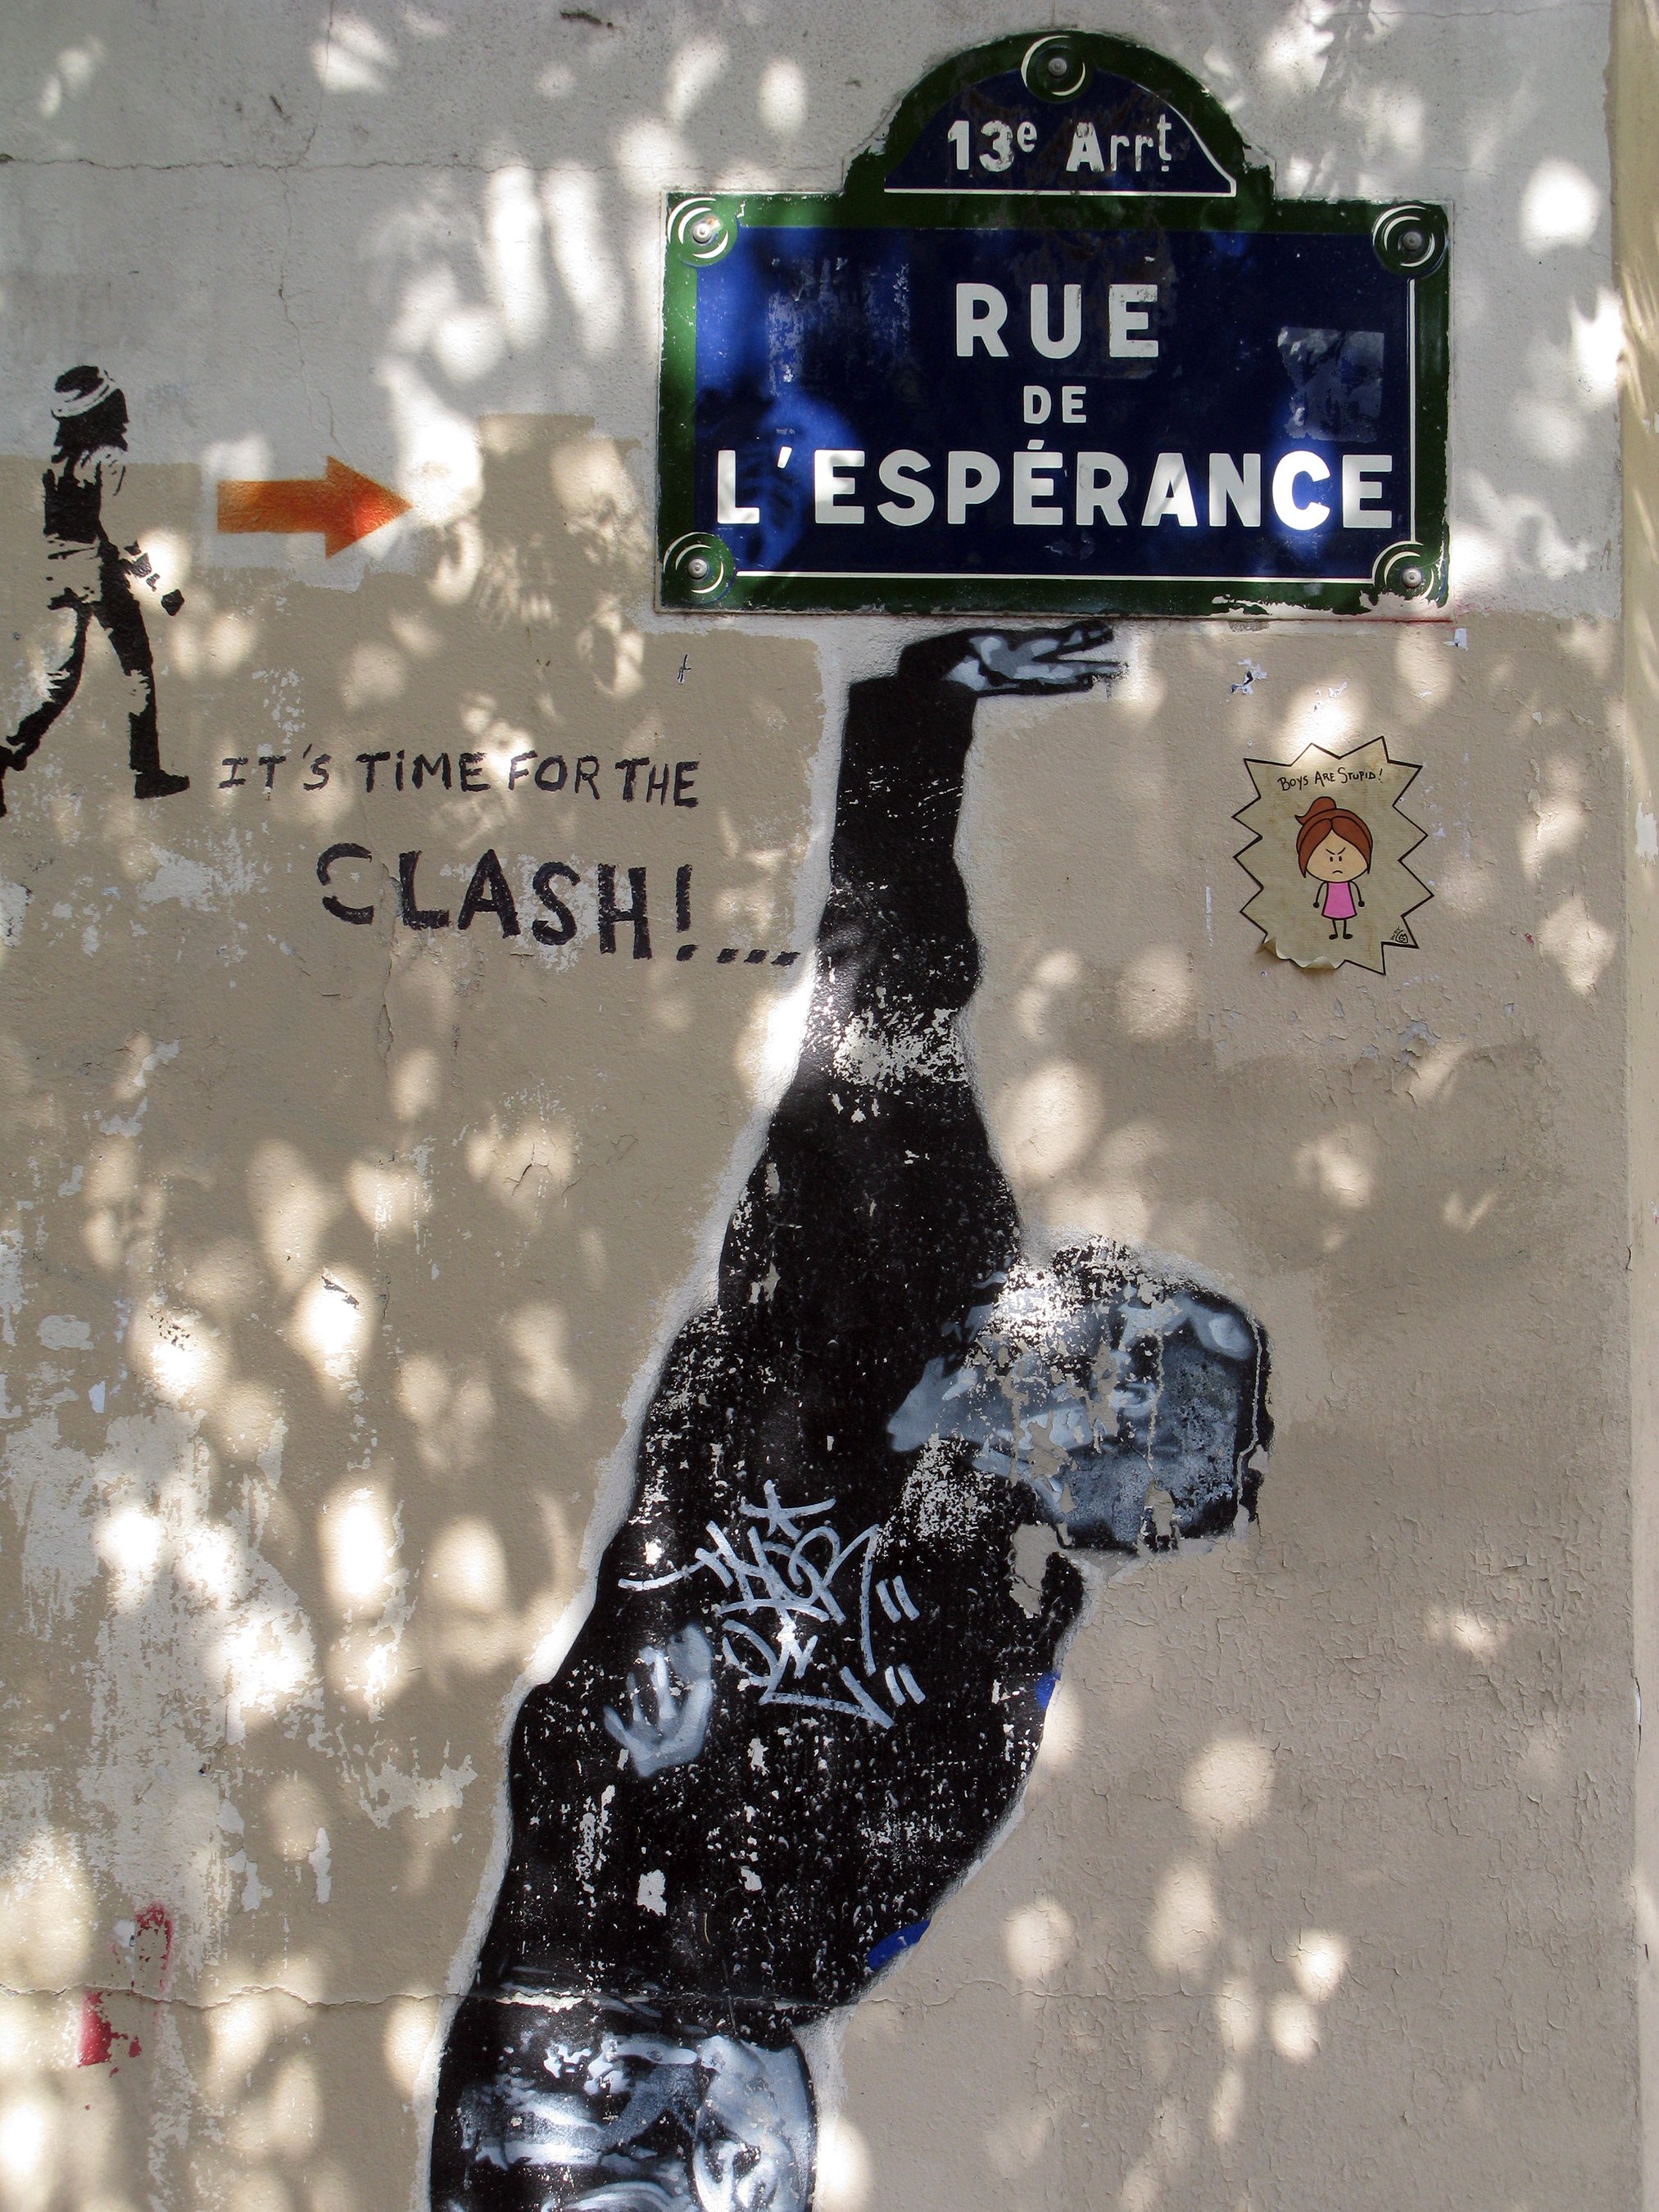 Clash_rue_lEsperance_Paris.jpg